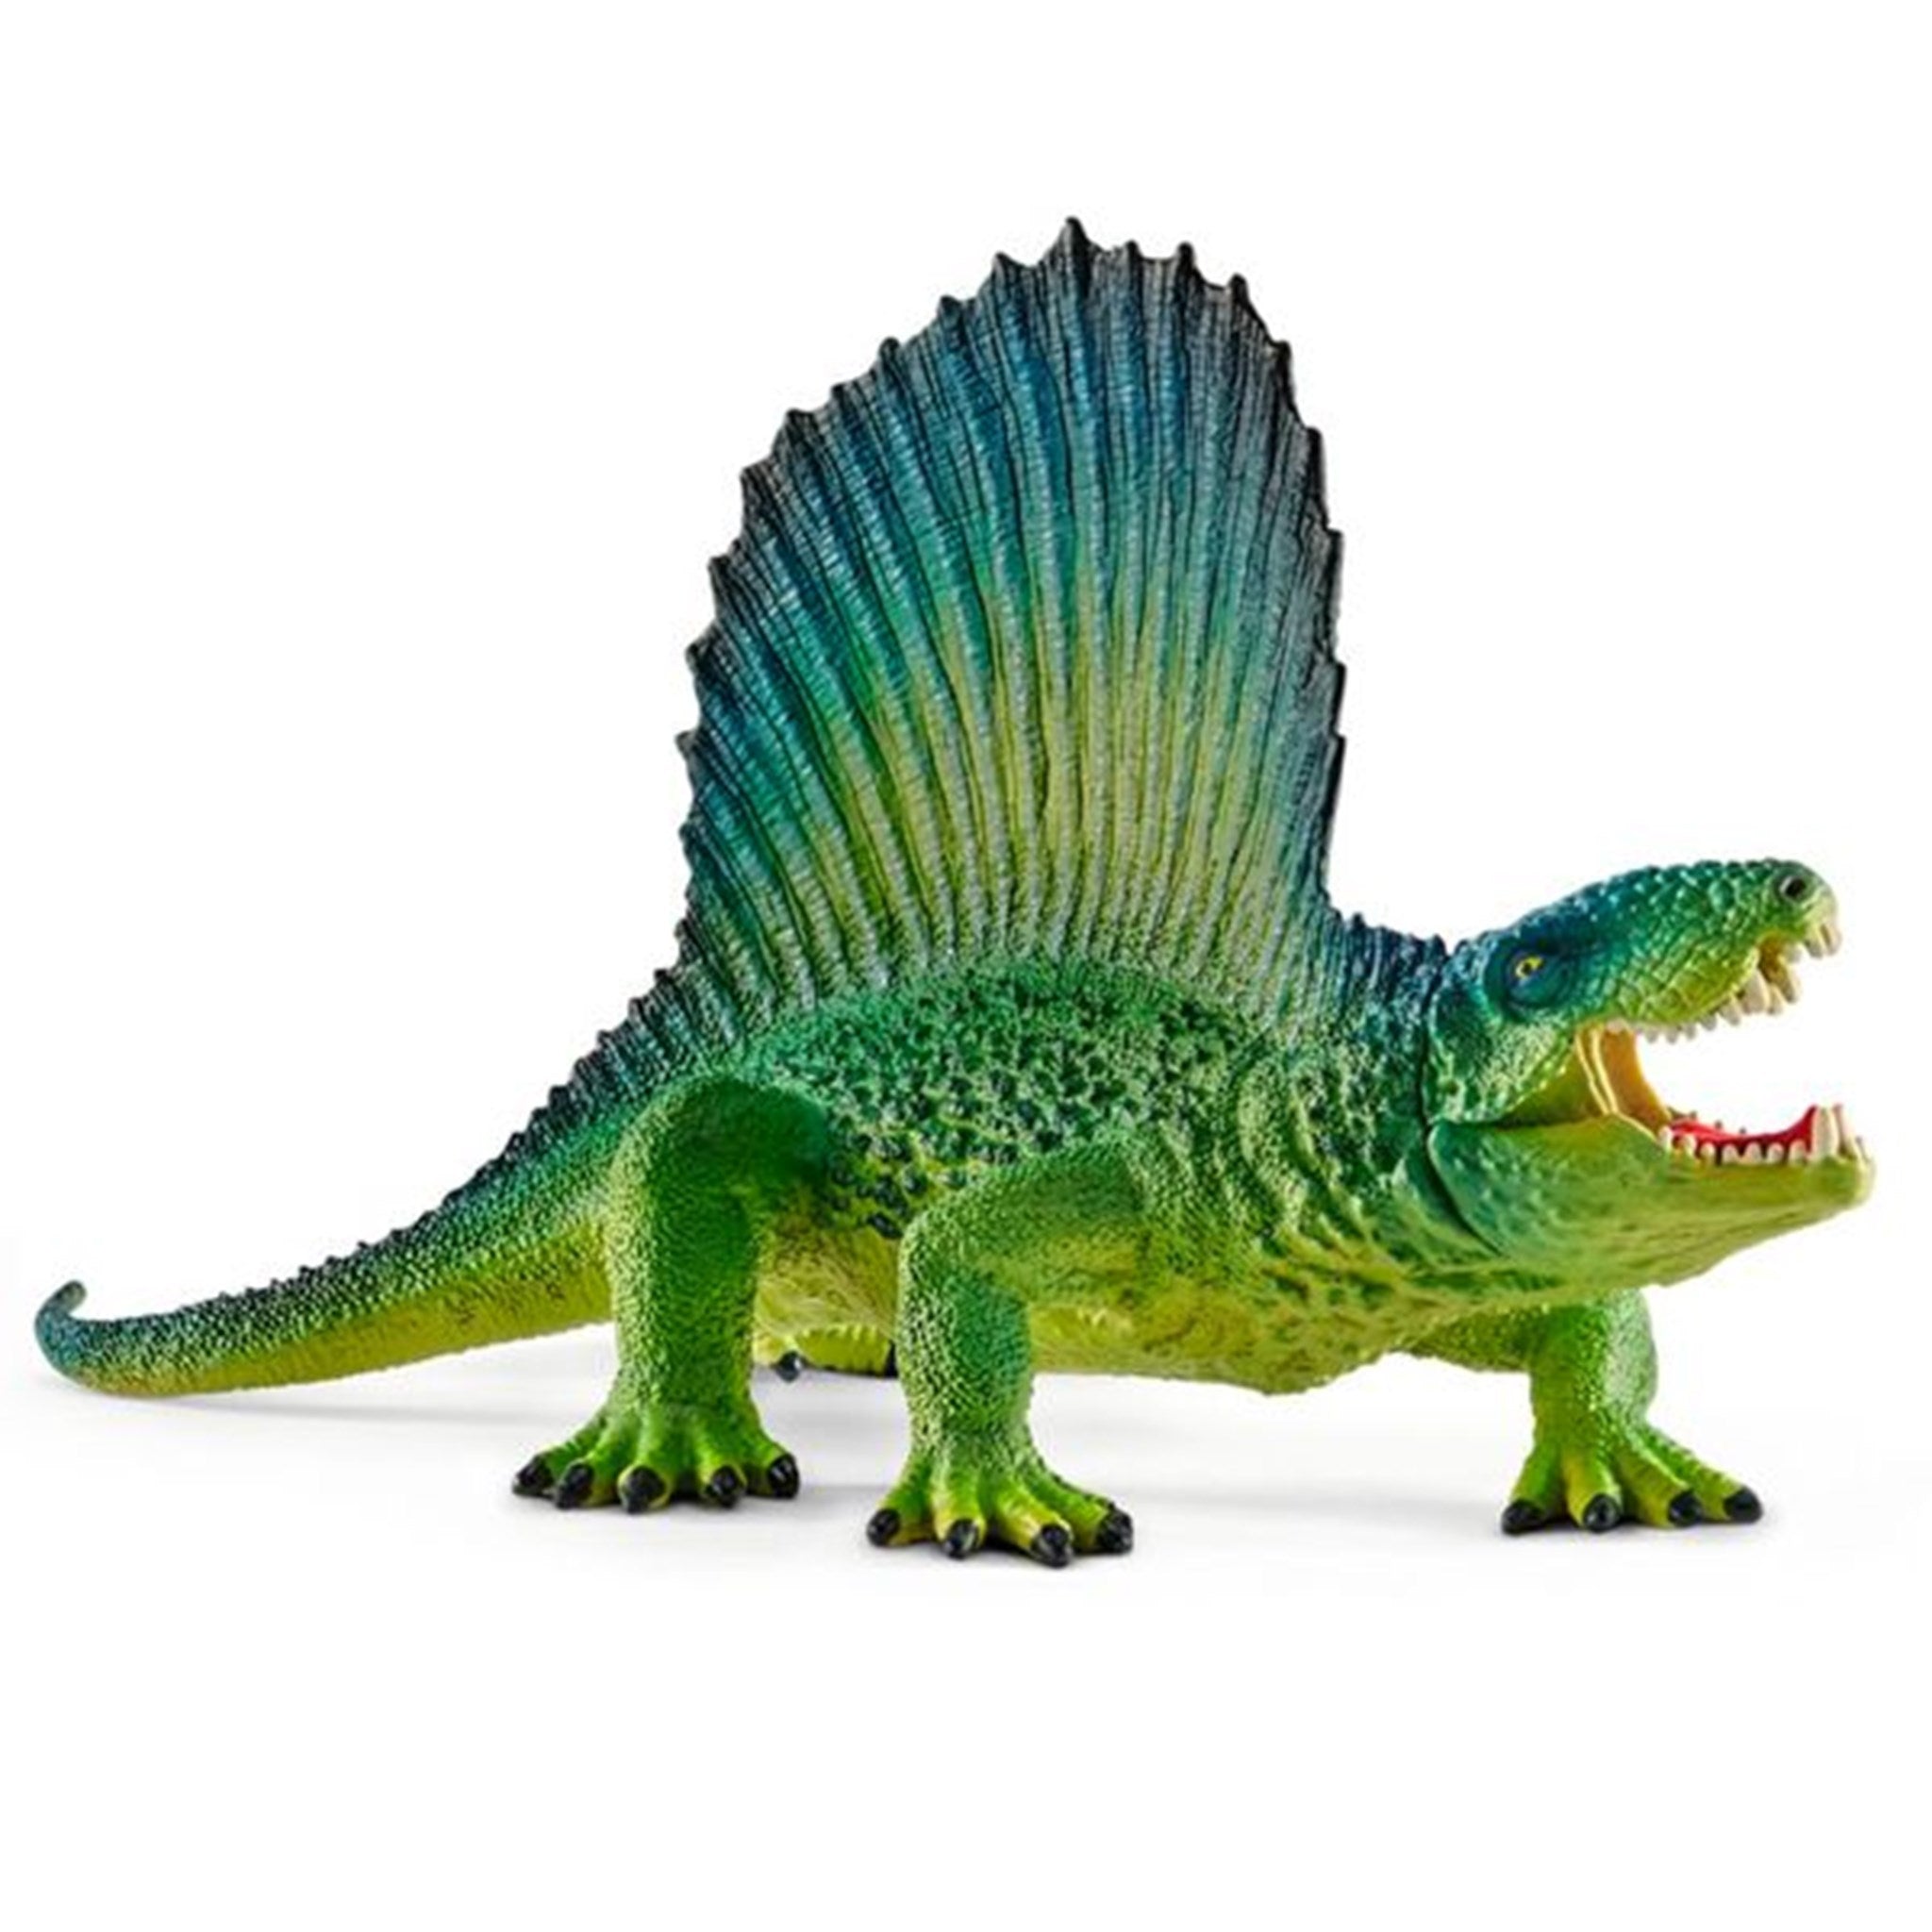 Schleich Dinosaurs Dimetrodon